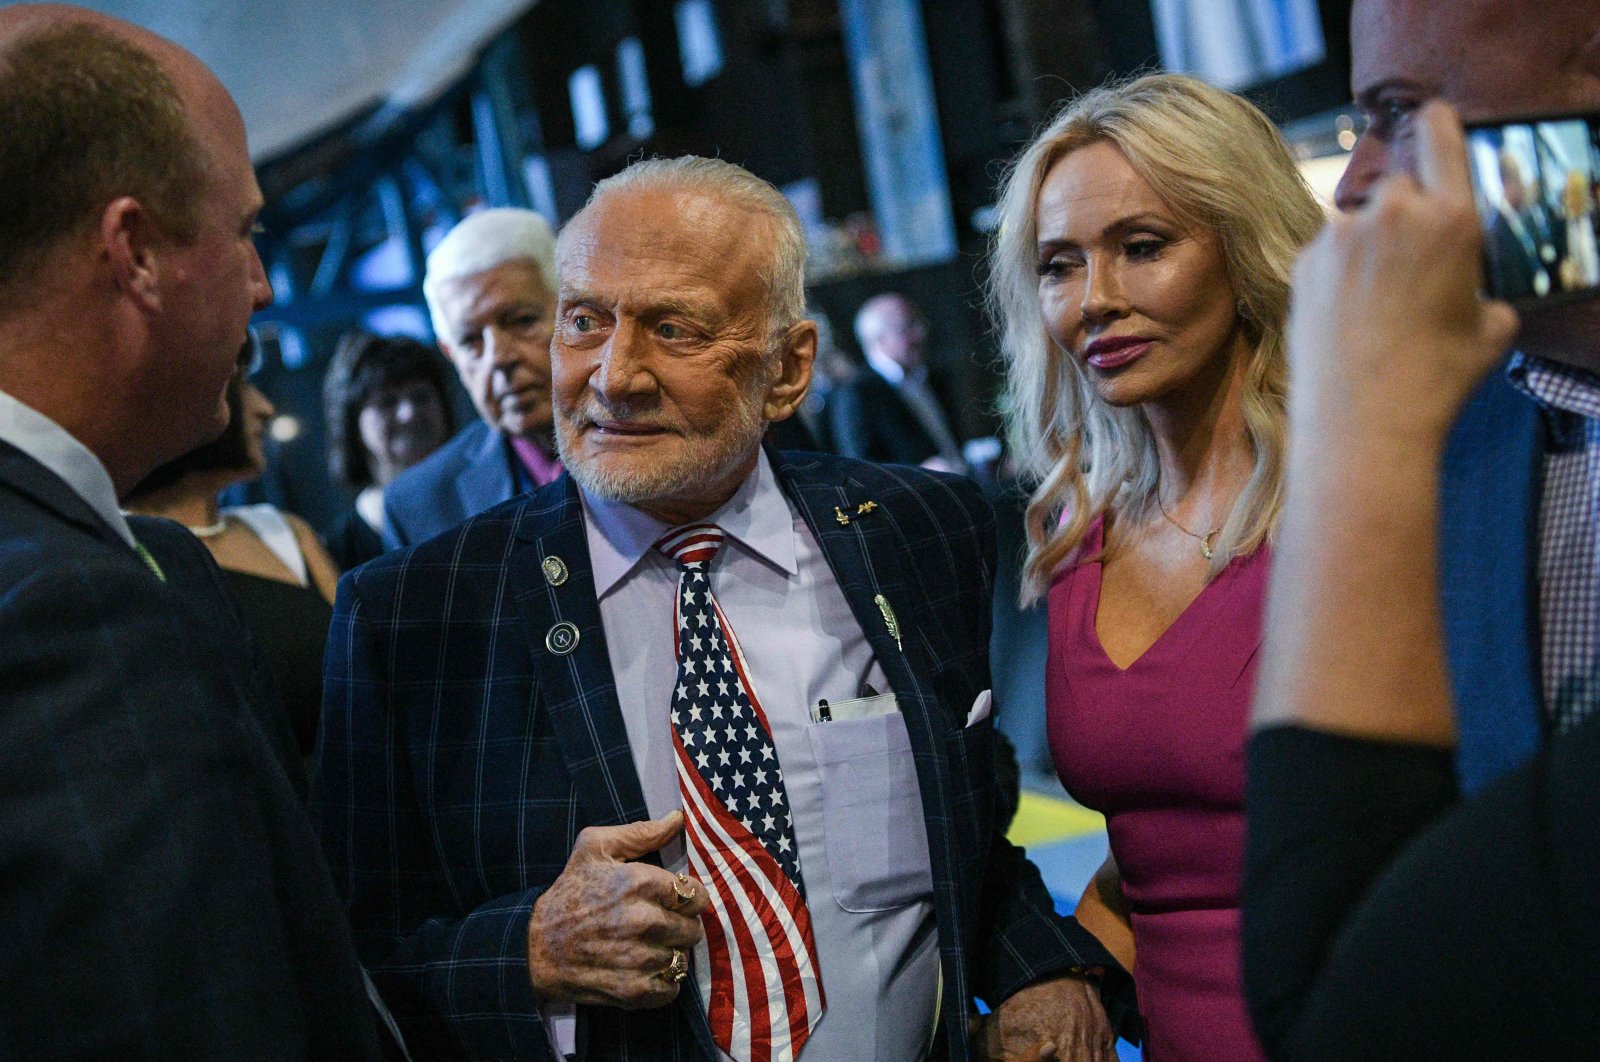 Manusia ke-2 di bulan, Buzz Aldrin menikah di hari ulang tahunnya yang ke-93